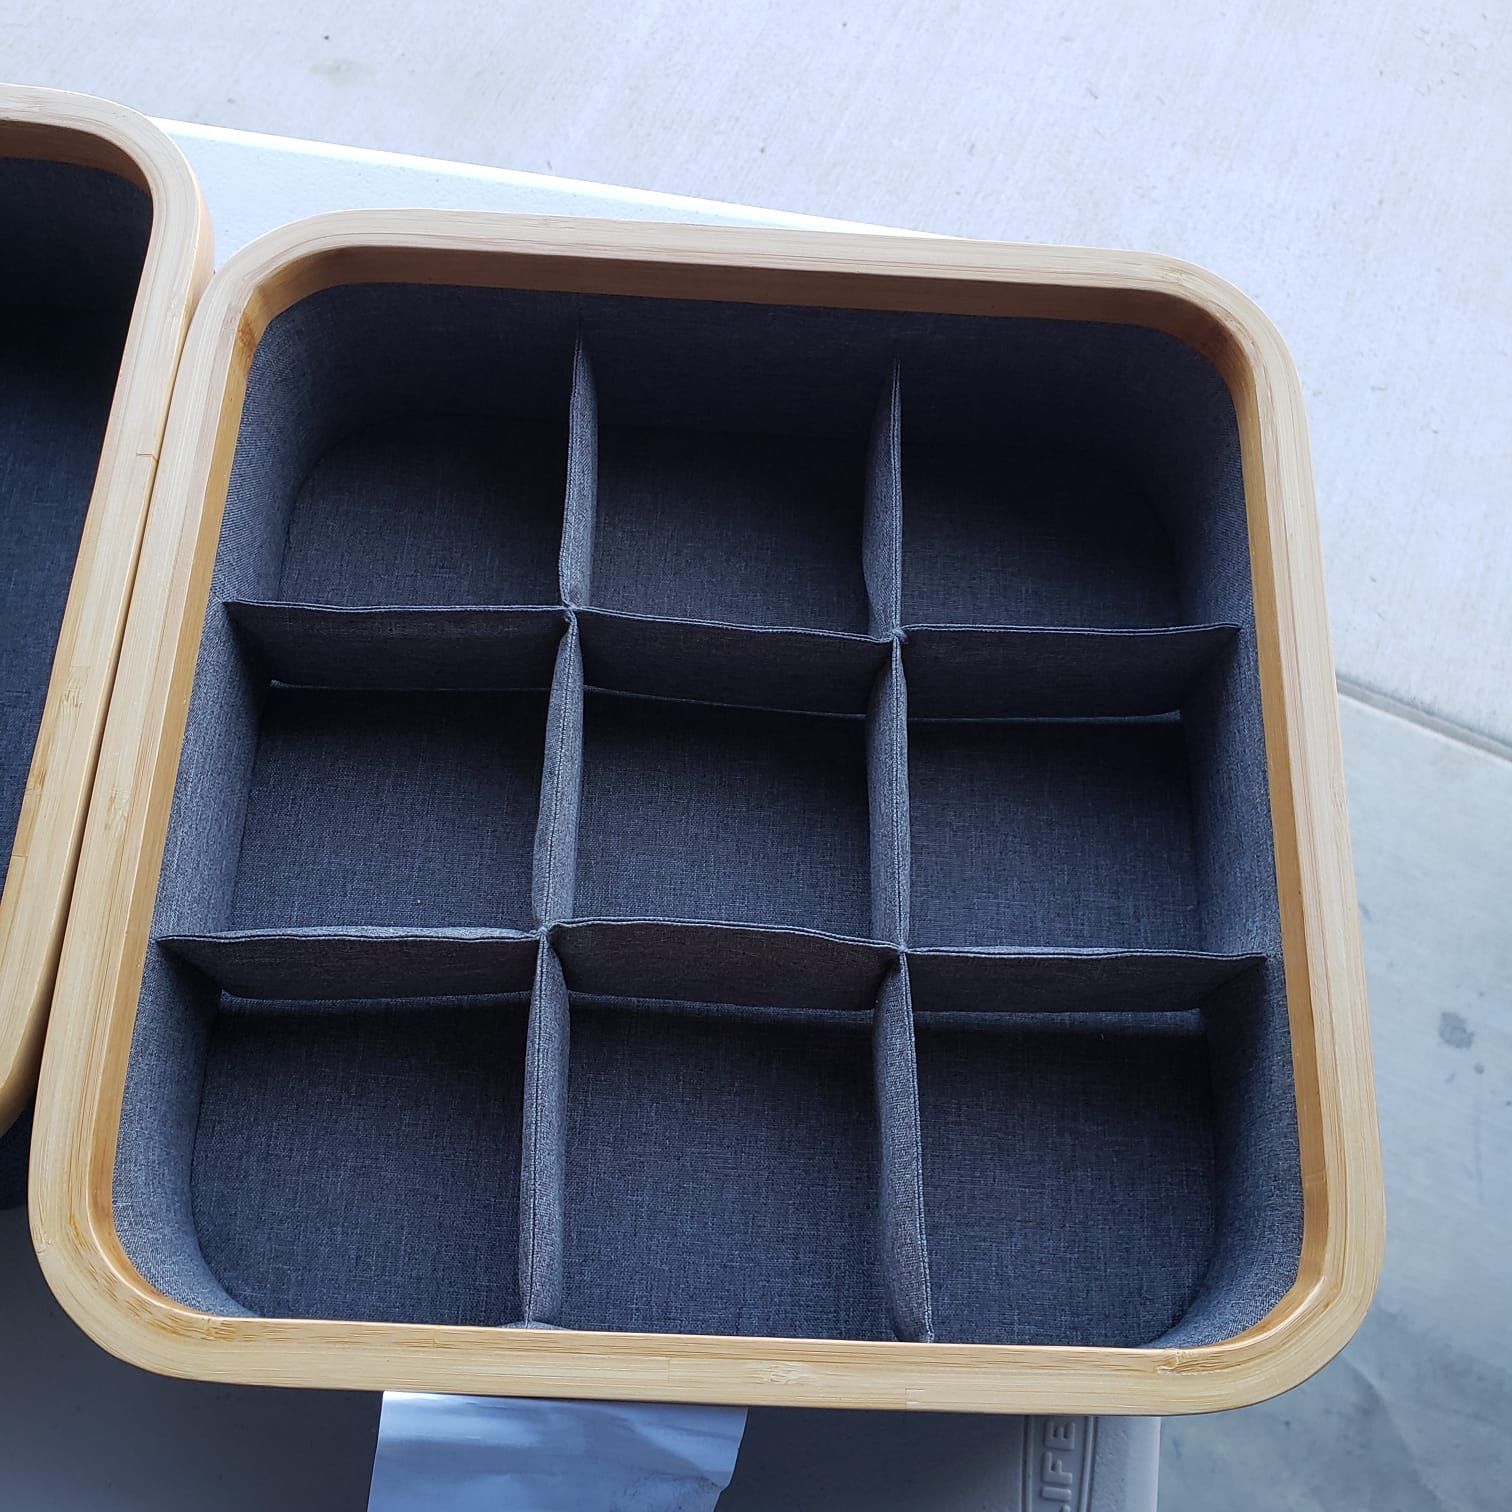 3-piece drawer organizer set